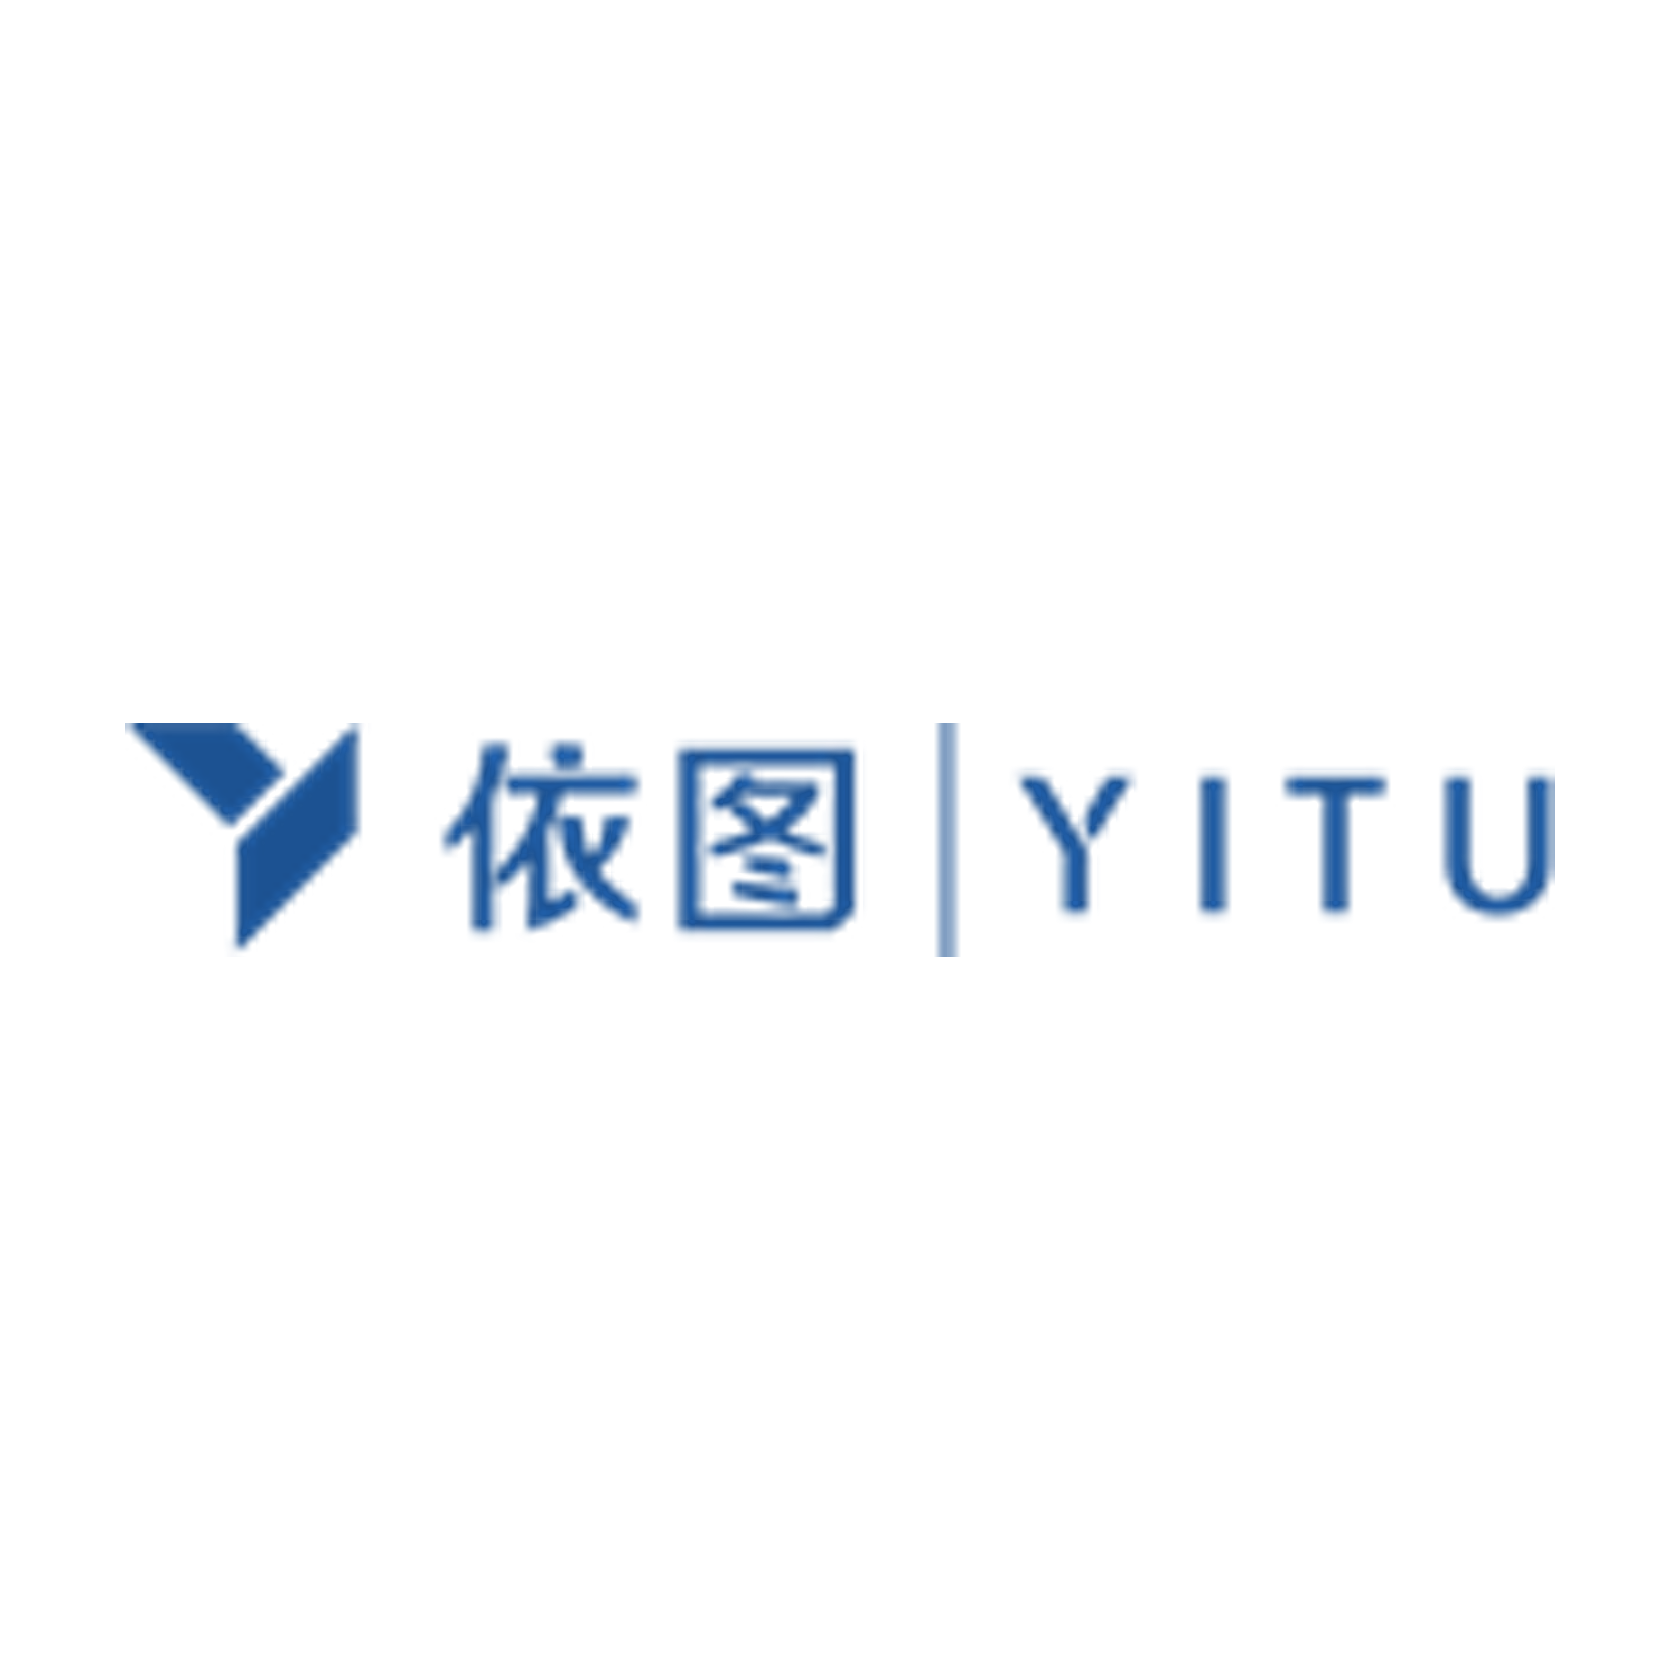 Yitu Logo